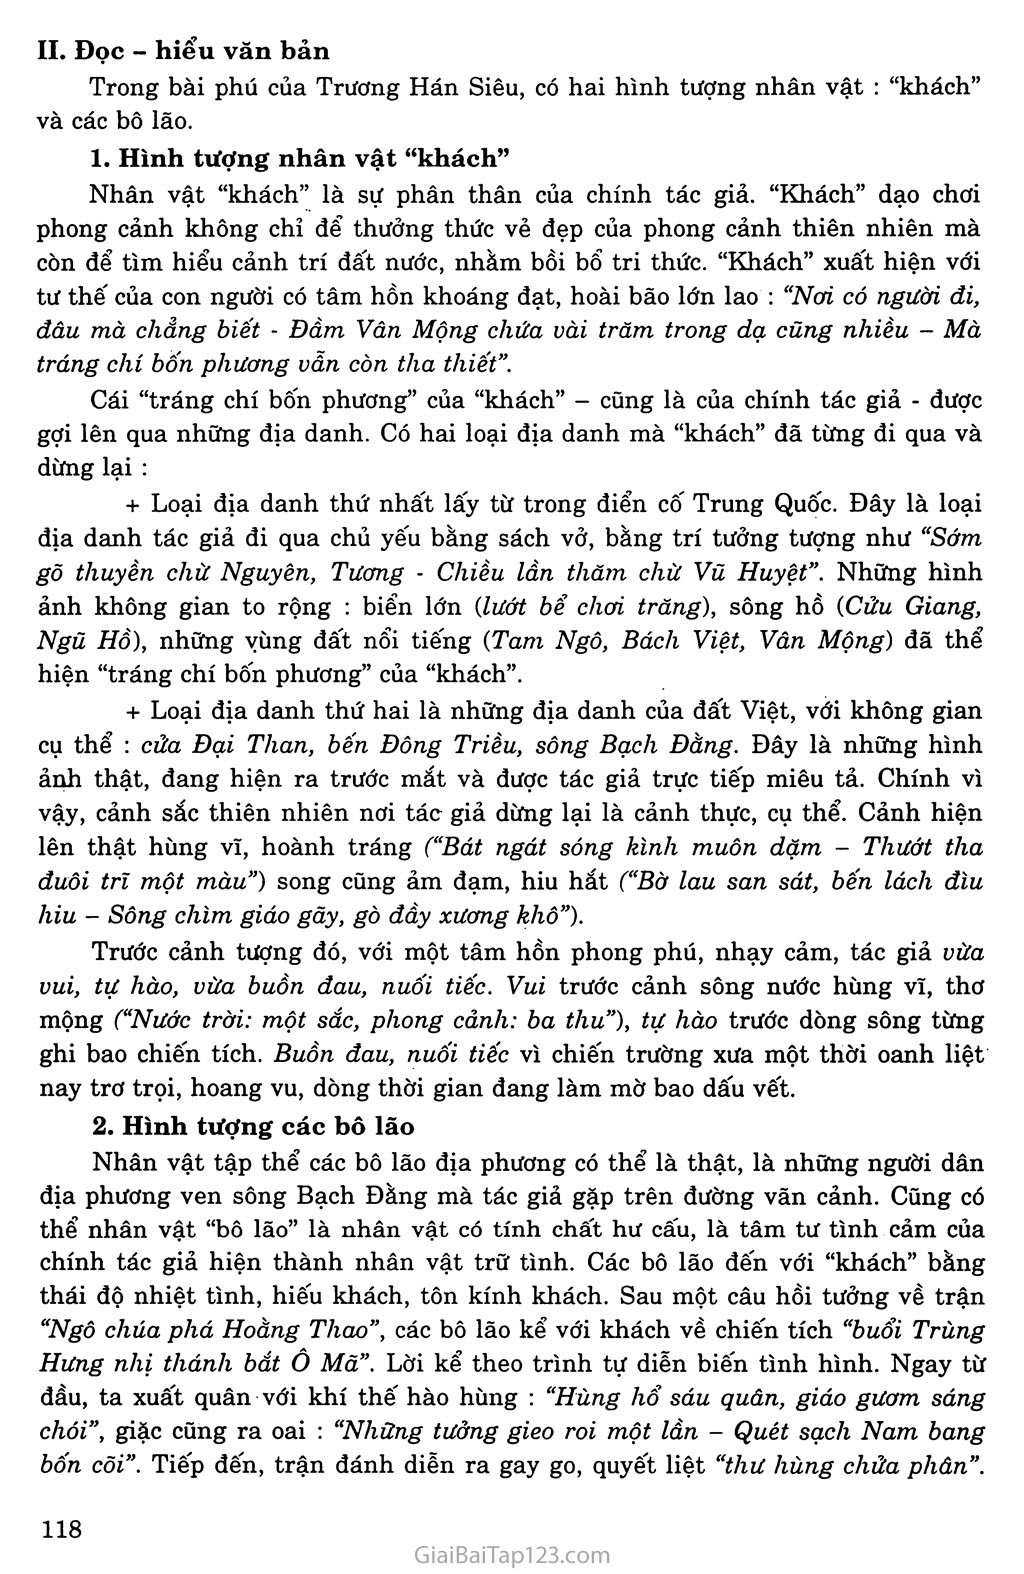 Phú sông Bạch Đằng (Bạch Đằng giang phú) trang 2